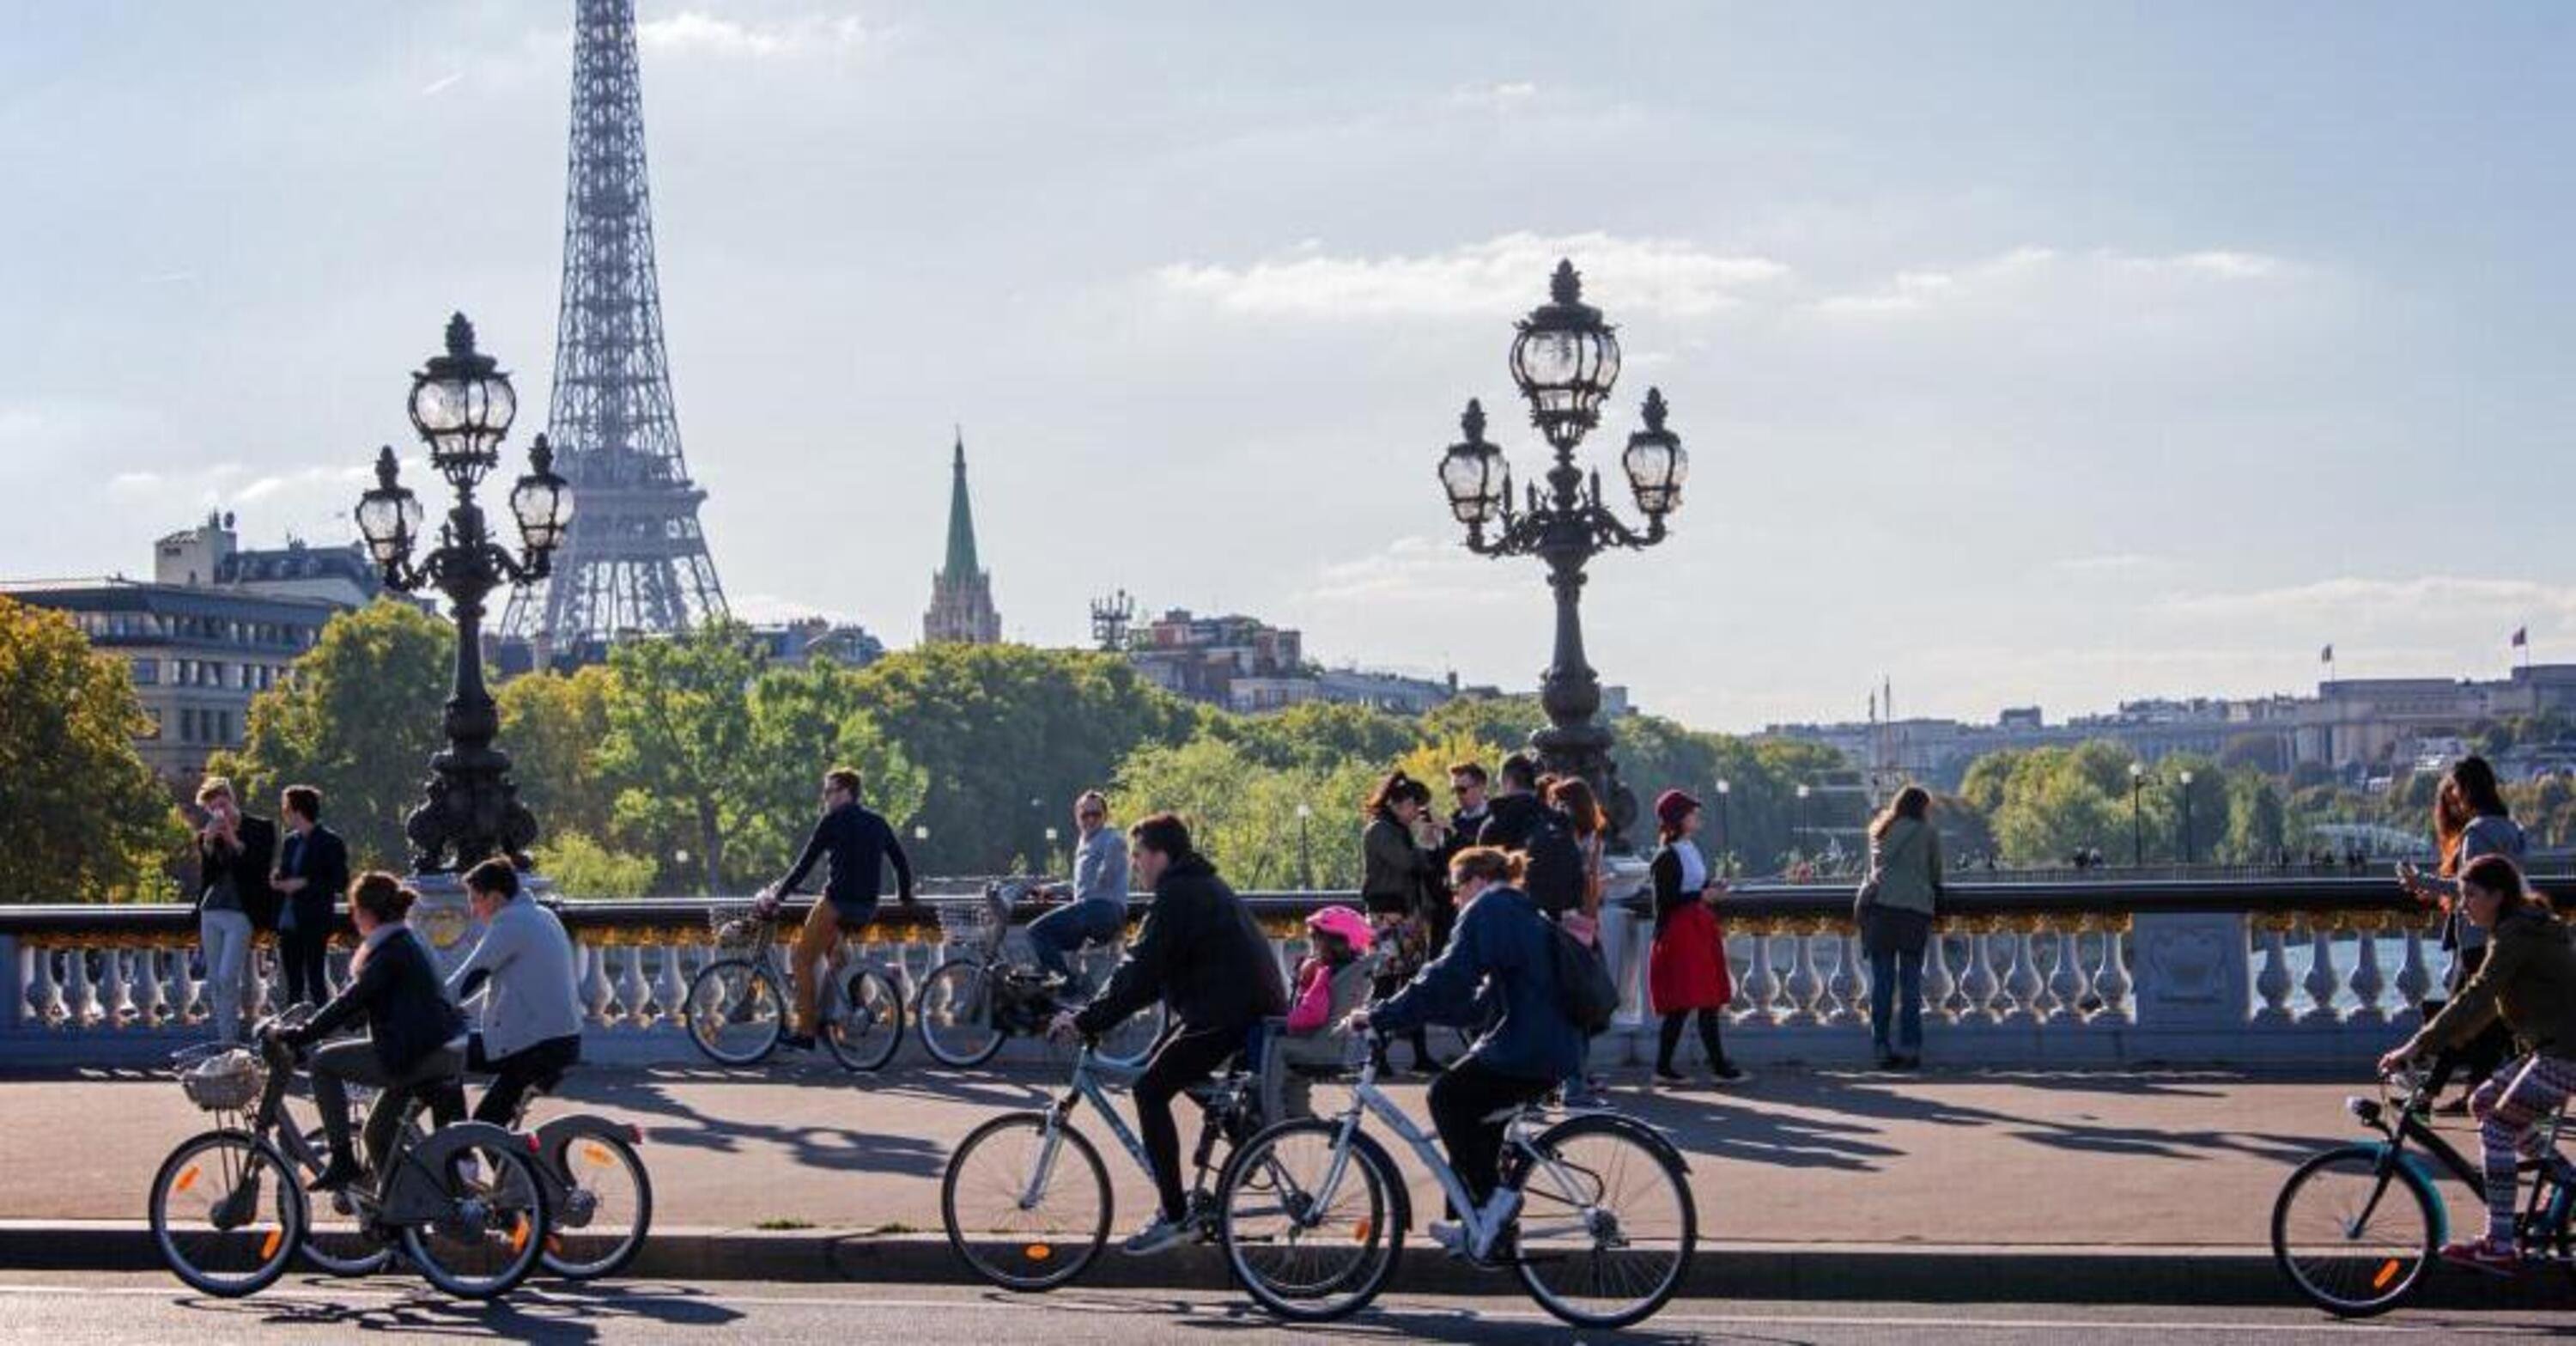 Cosa prevede il piano UE per raddoppiare l'uso della bici?